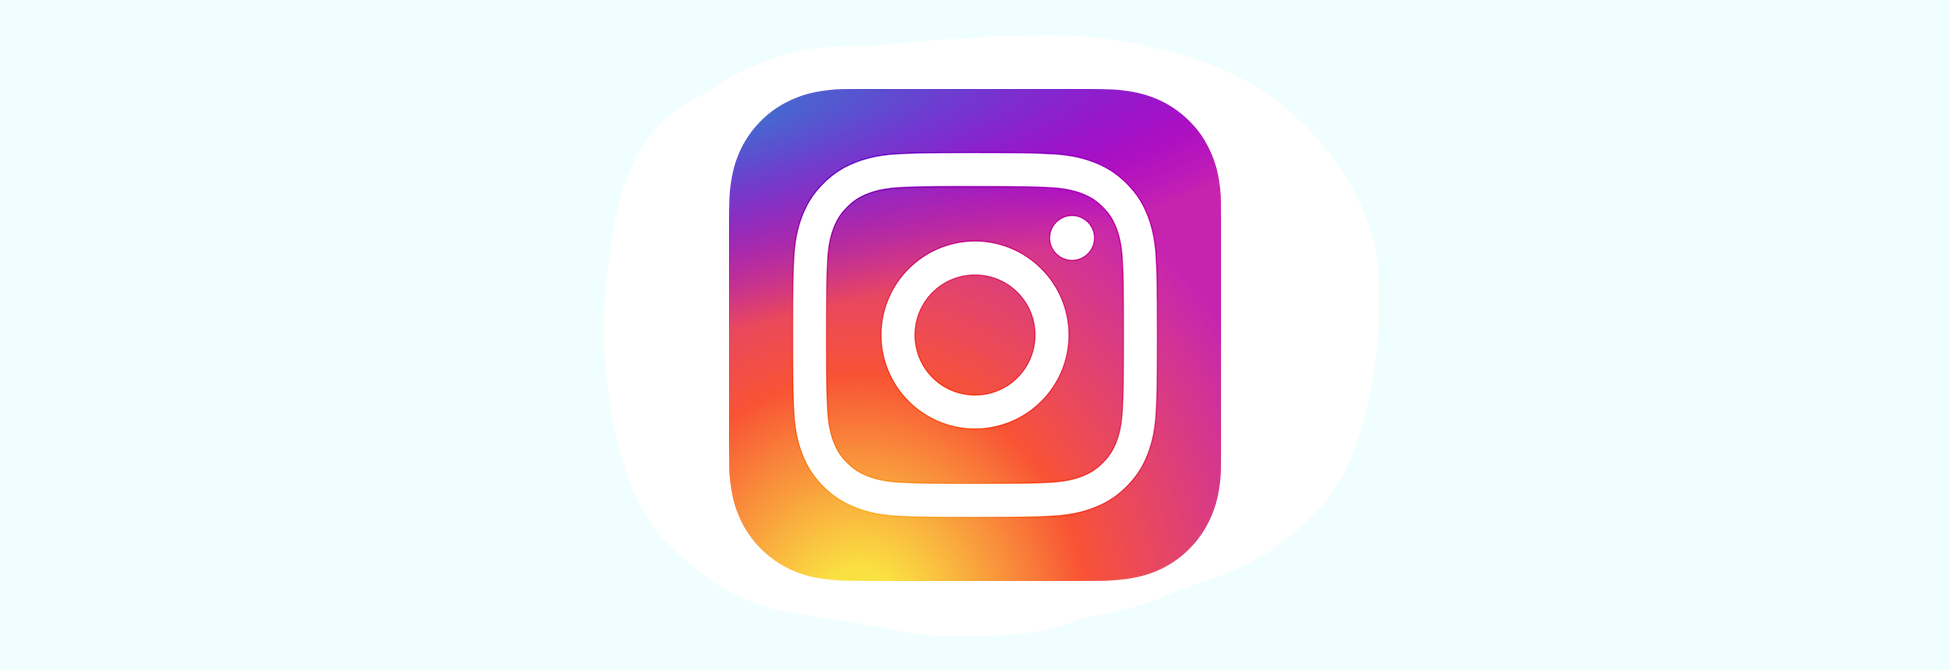 Comment gagner de nouveaux abonnés sur Instagram ?